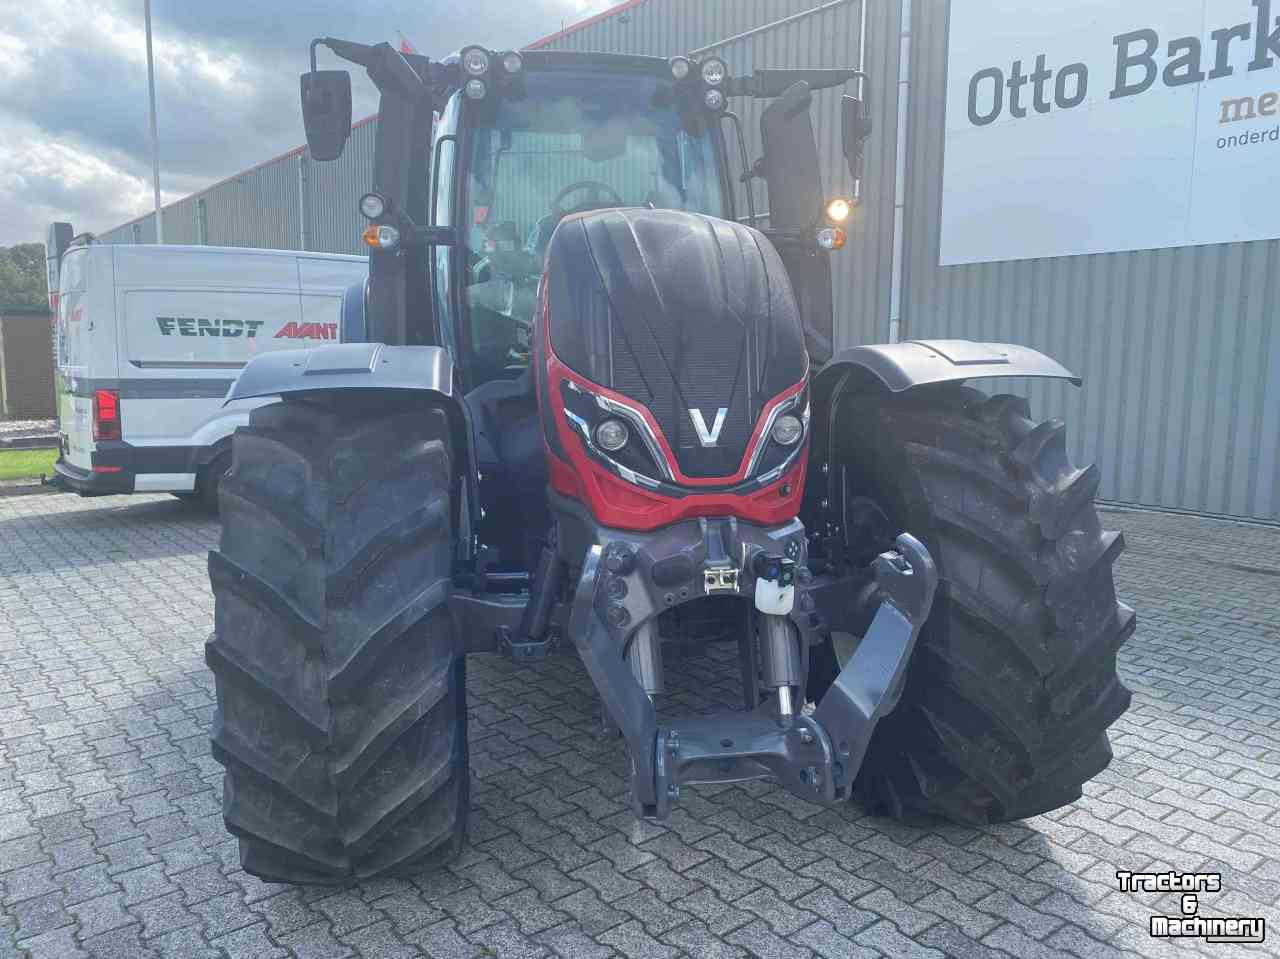 Tractors Valtra T215A